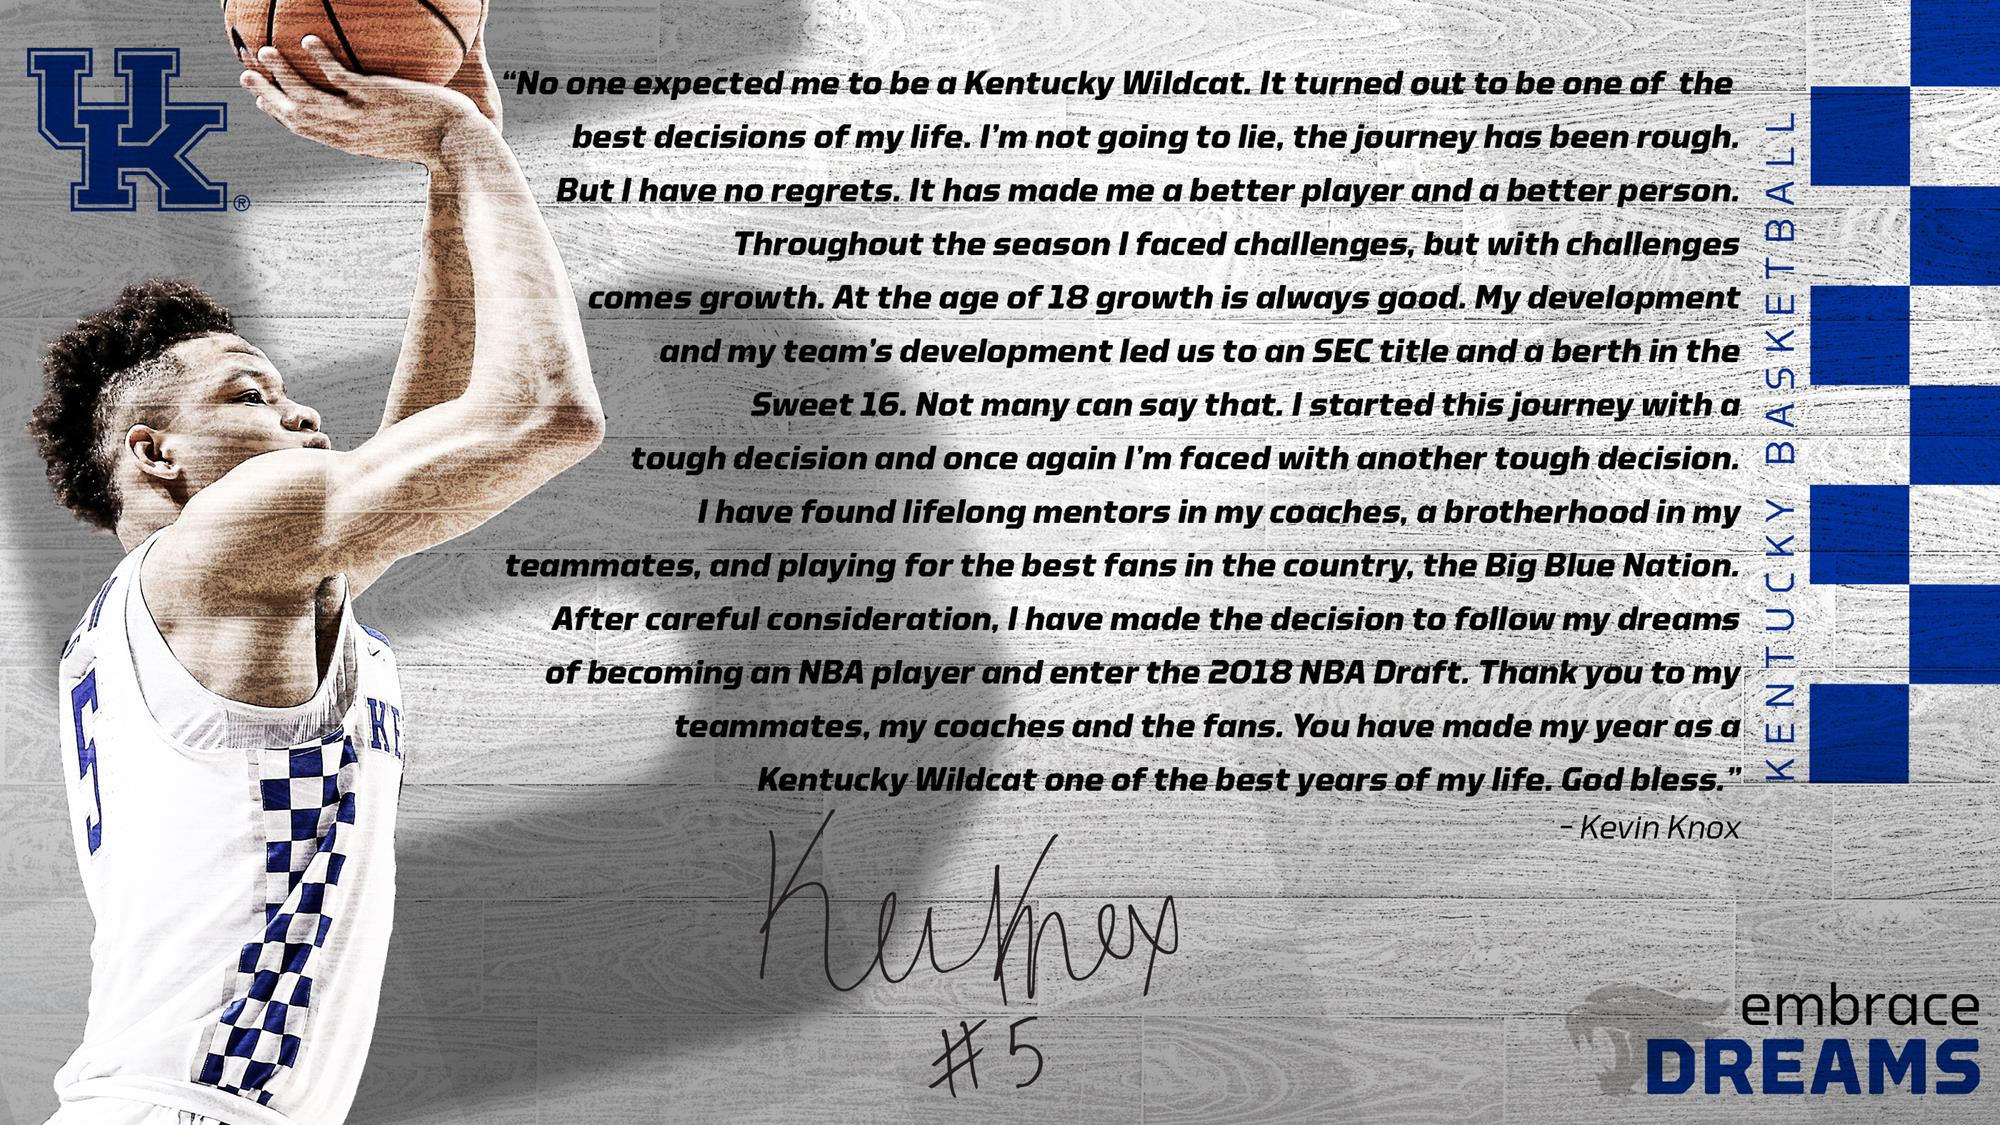 Kevin Knox to Enter 2018 NBA Draft